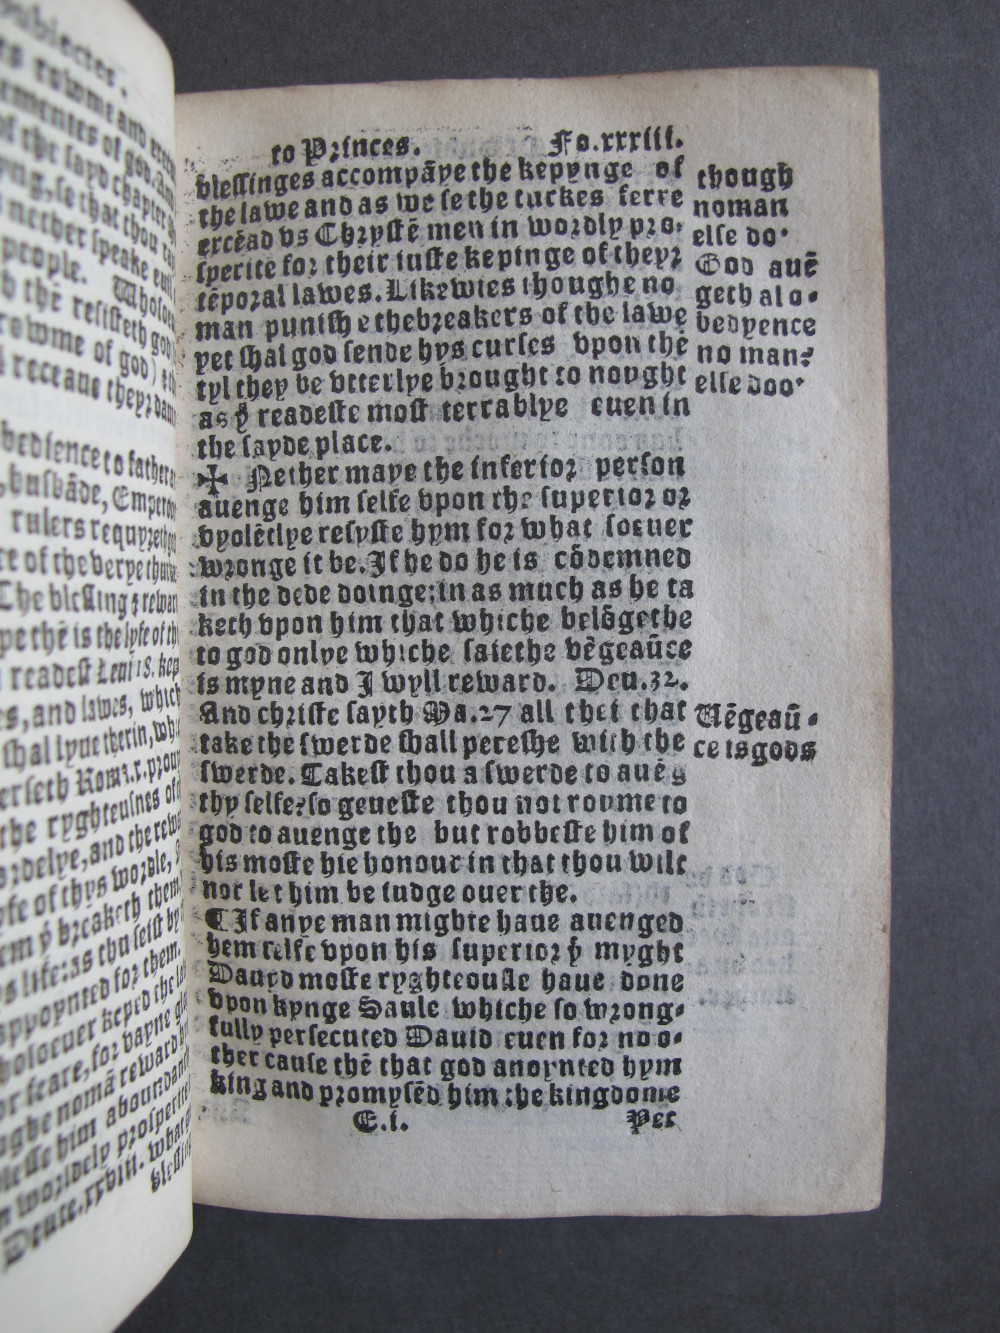 1 Folio E1 recto